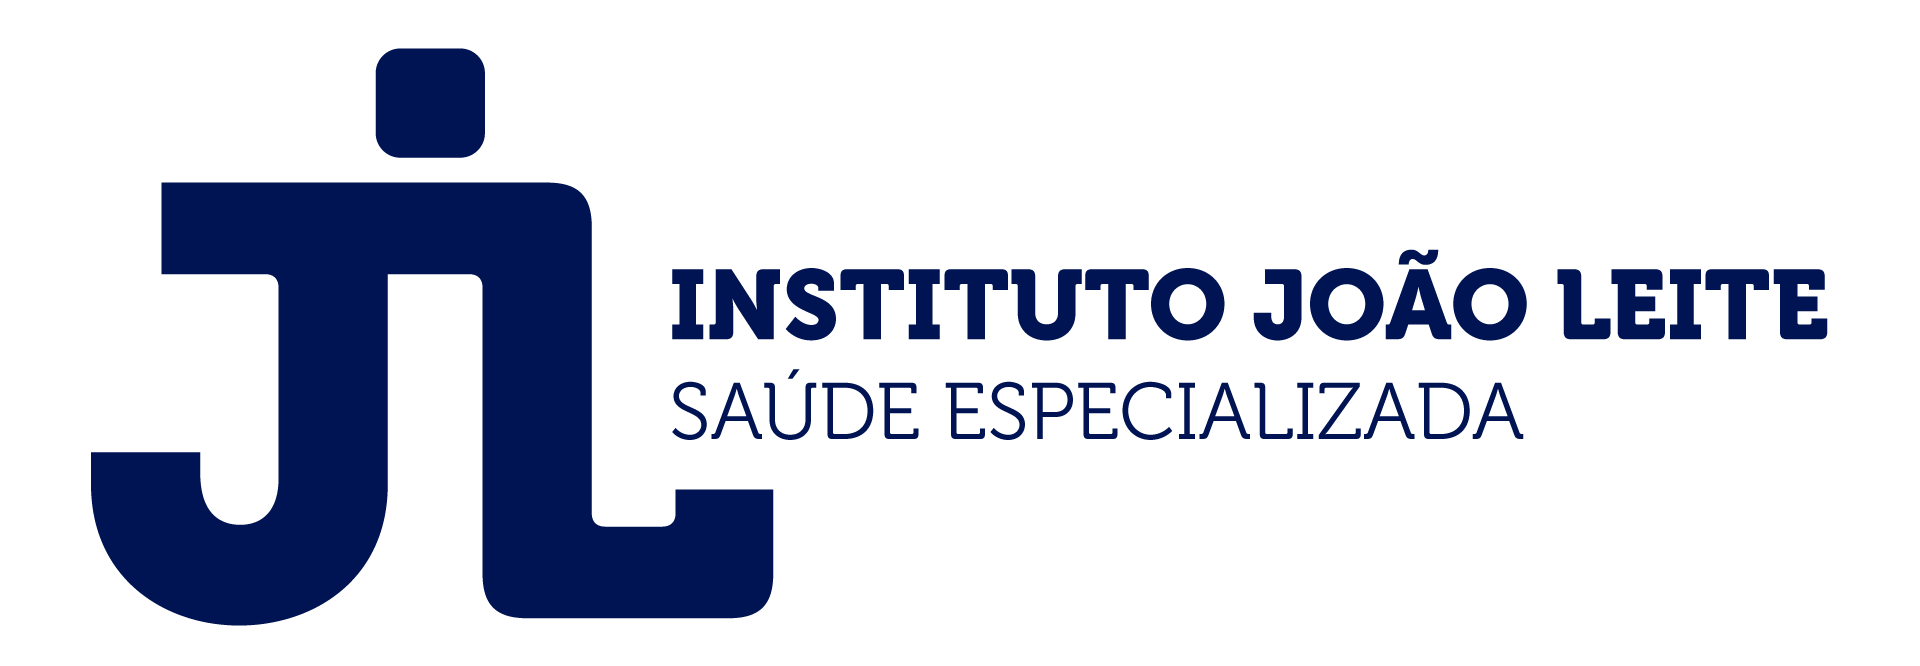 Instituto João Leite